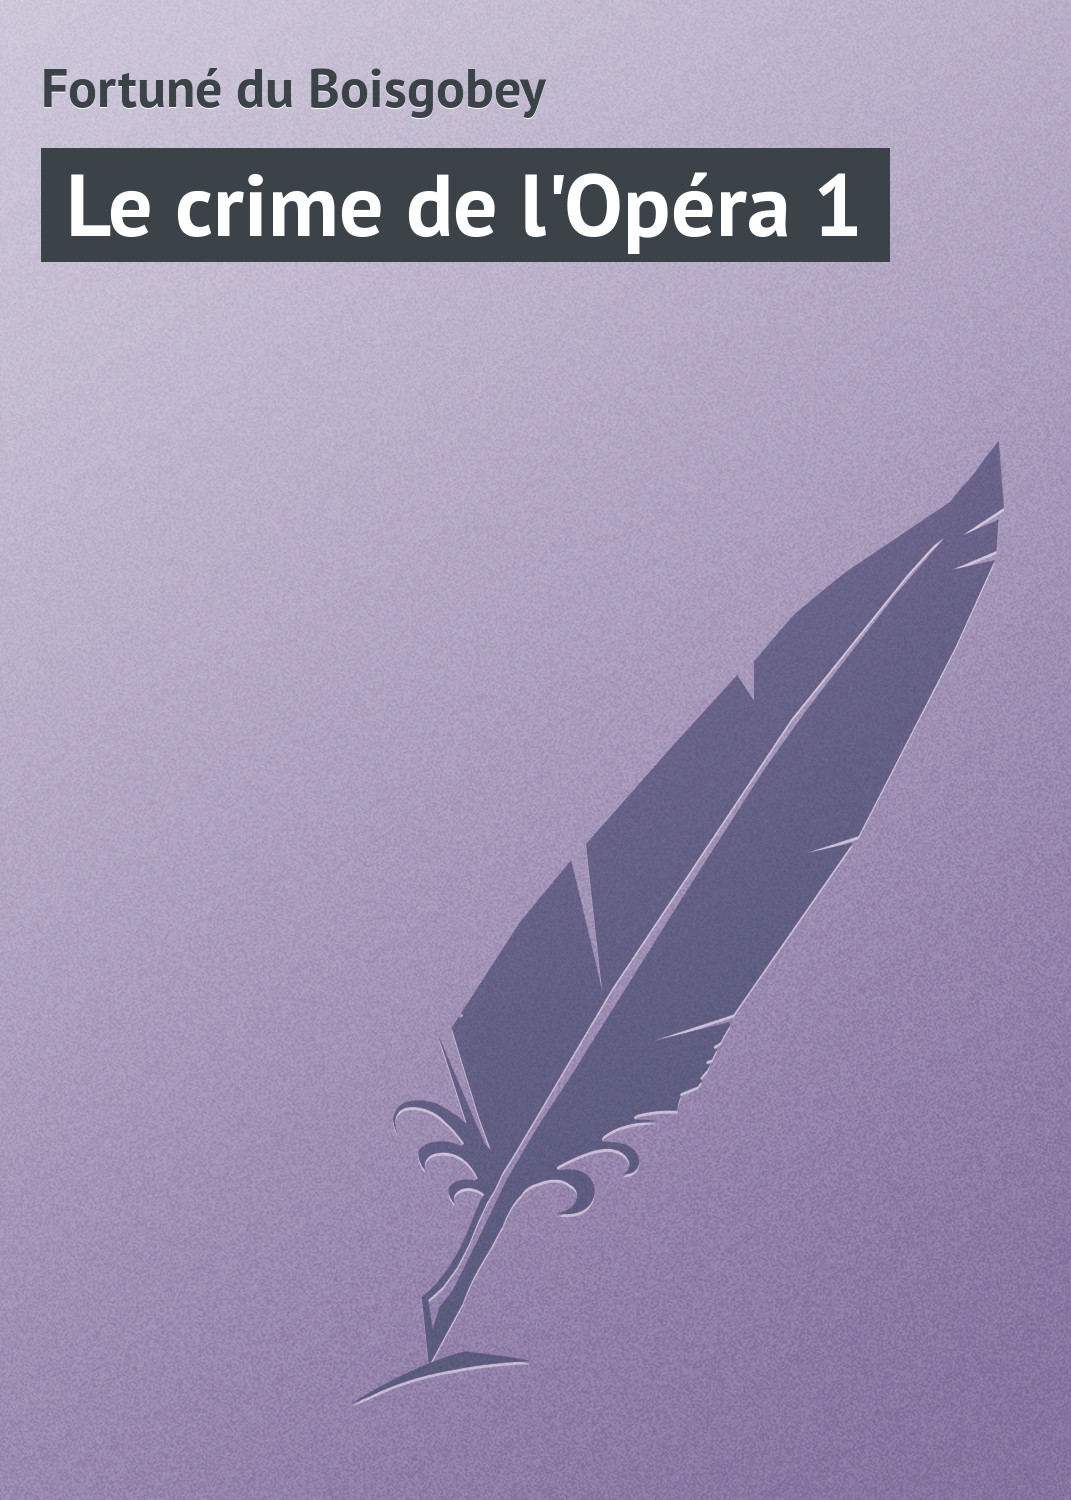 Книга Le crime de l'Opéra 1 из серии , созданная Fortuné du, может относится к жанру Зарубежная старинная литература, Зарубежная классика. Стоимость электронной книги Le crime de l'Opéra 1 с идентификатором 21105934 составляет 5.99 руб.